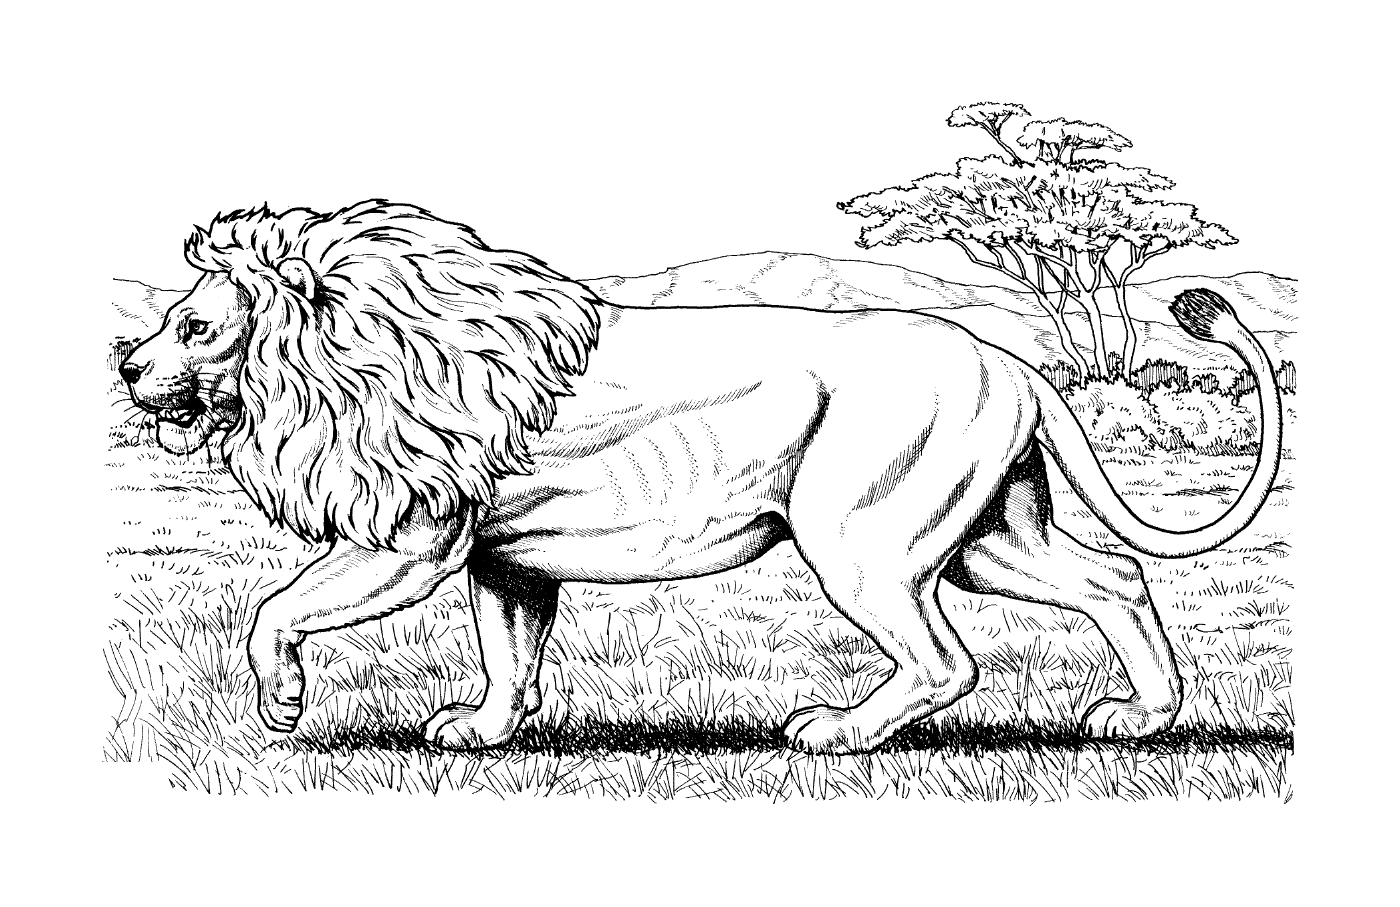  Африканский лев ходит по траве 